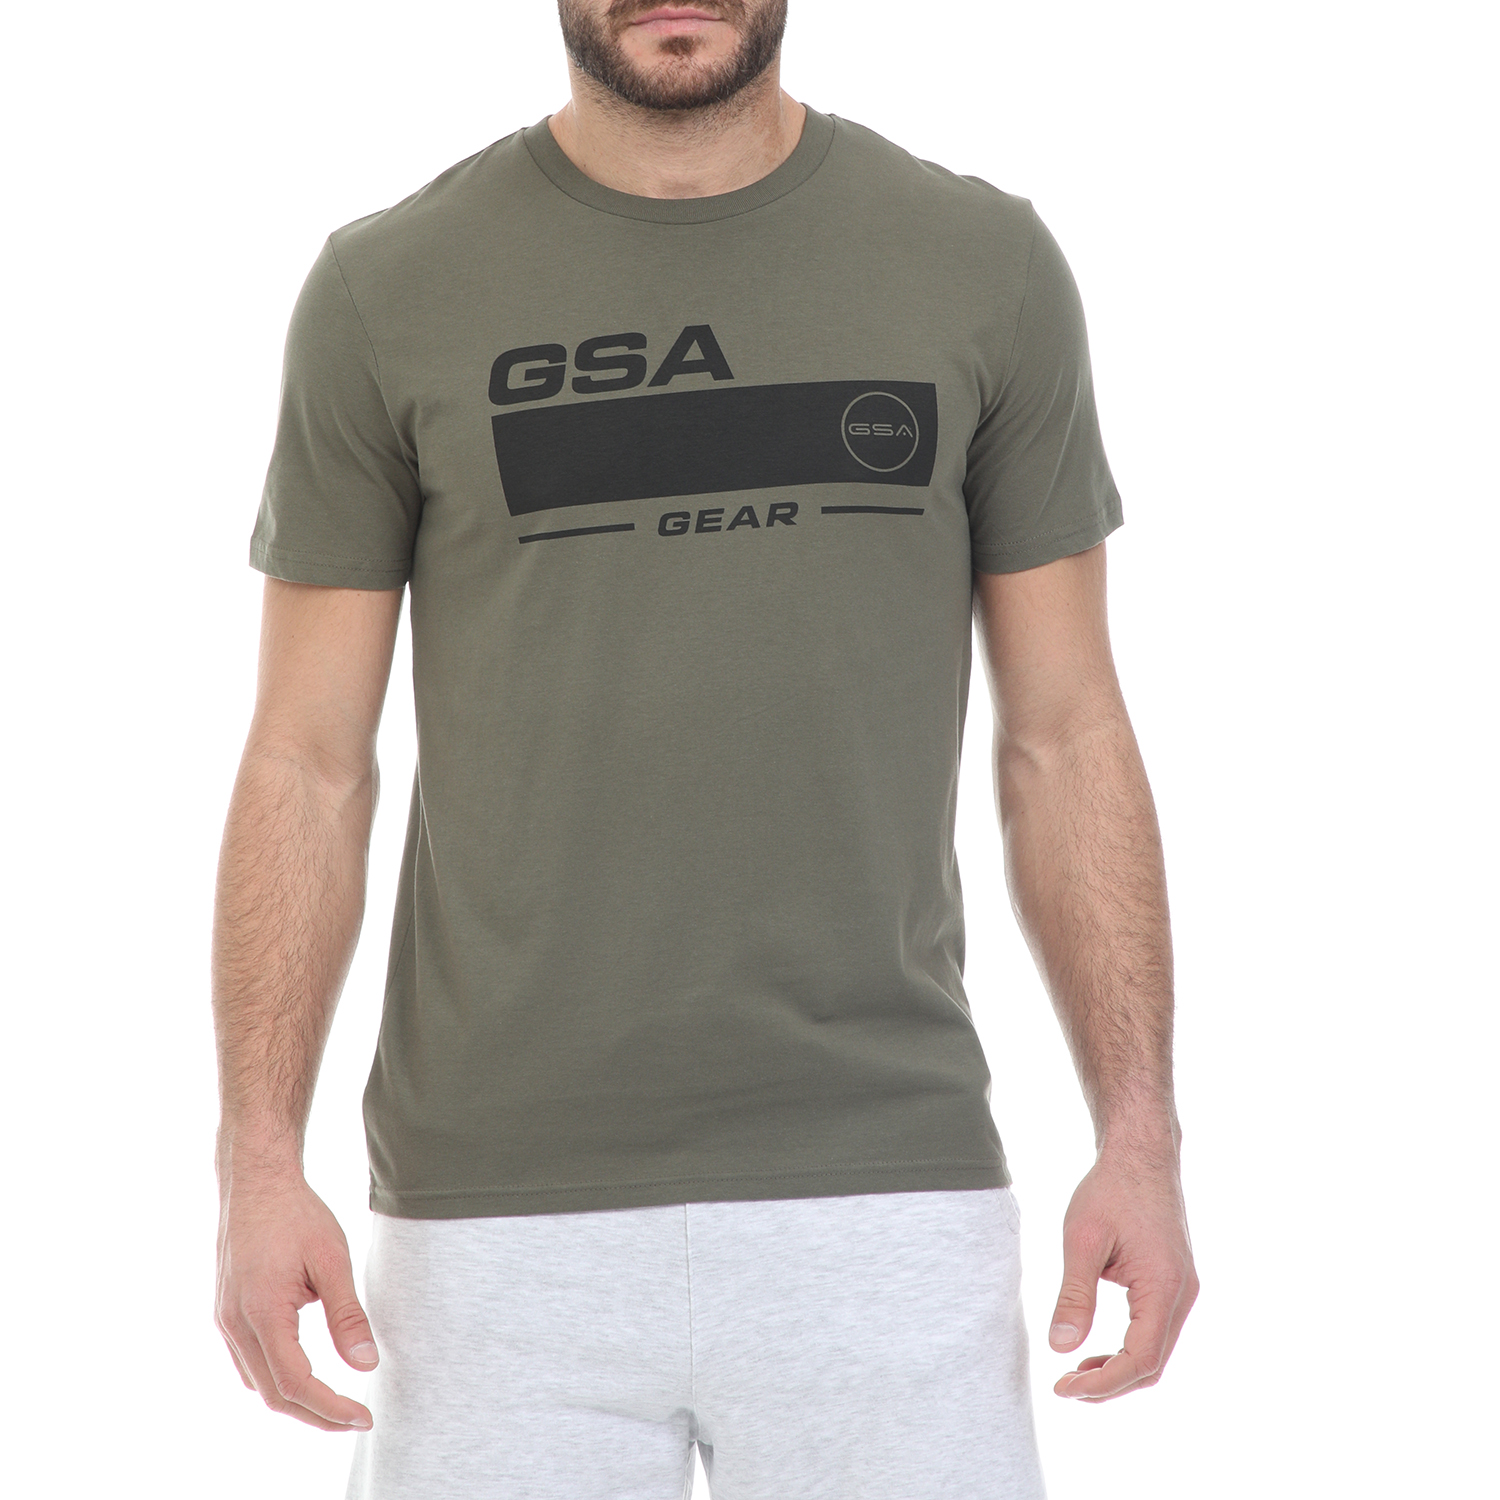 Ανδρικά/Ρούχα/Μπλούζες/Κοντομάνικες GSA - Ανδρικό t-shirt GSA ORGANIC PLUS χακί